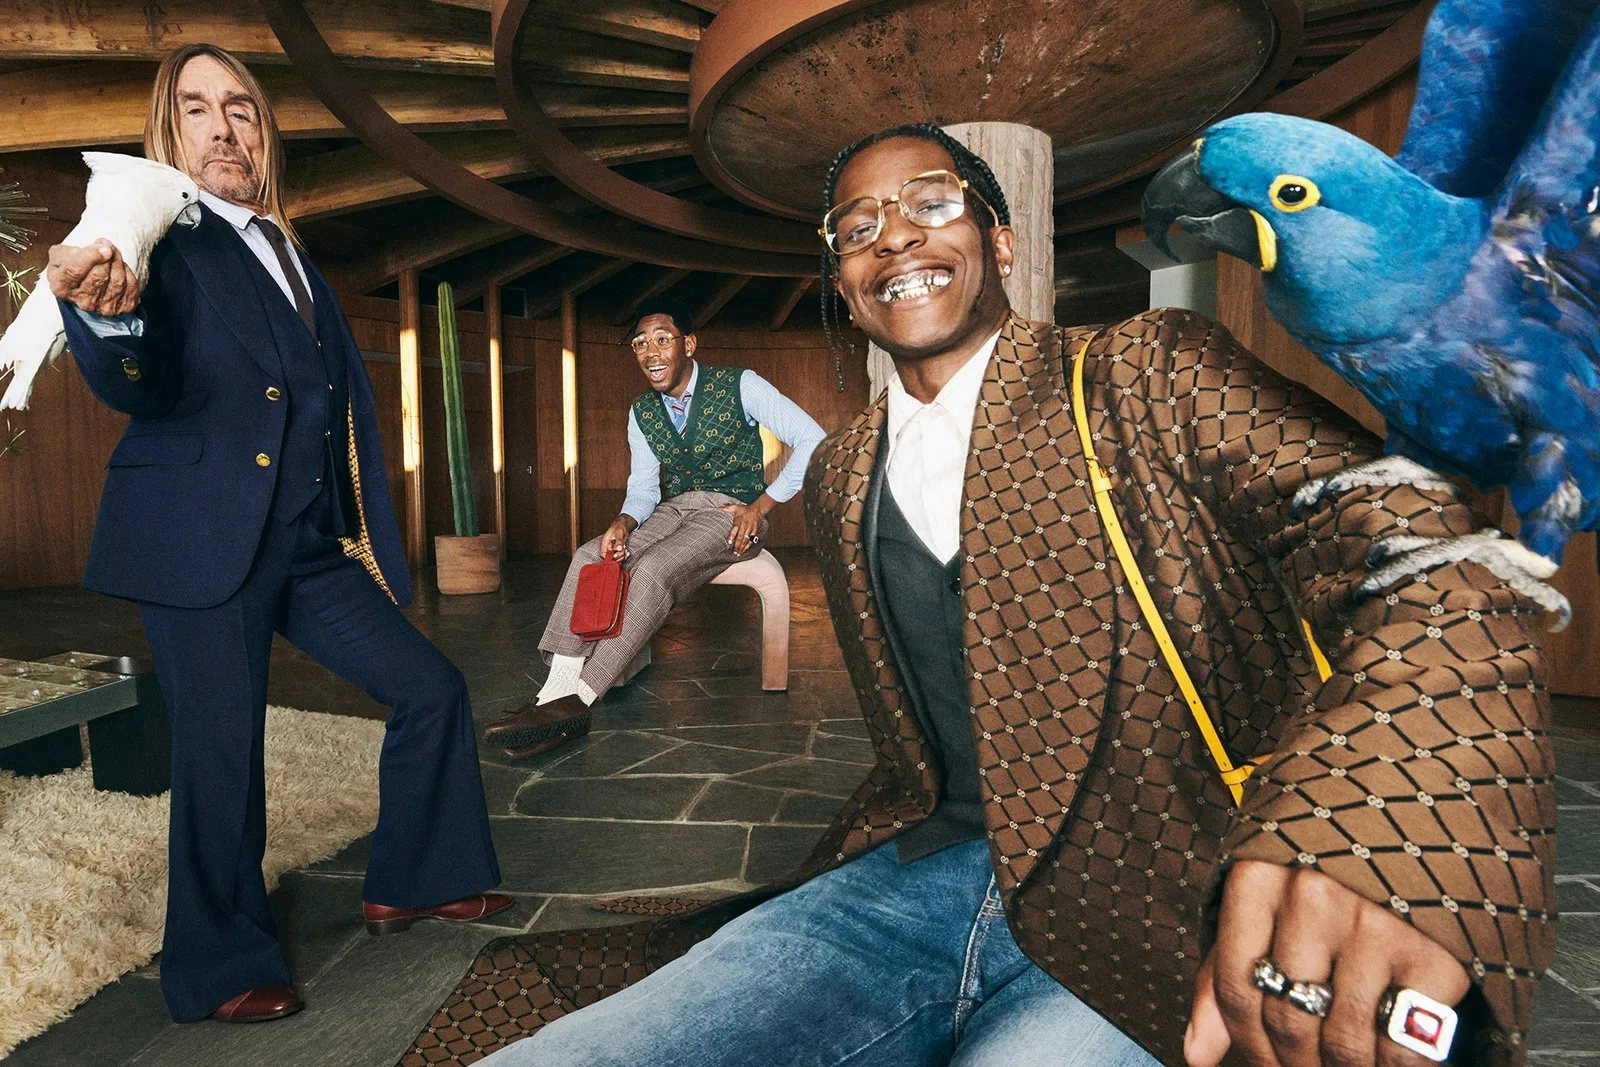 In Alessandro Michele's Gucci era, A$ap Rocky stars in Gucci's 2020 campaign. Photo: Gucci